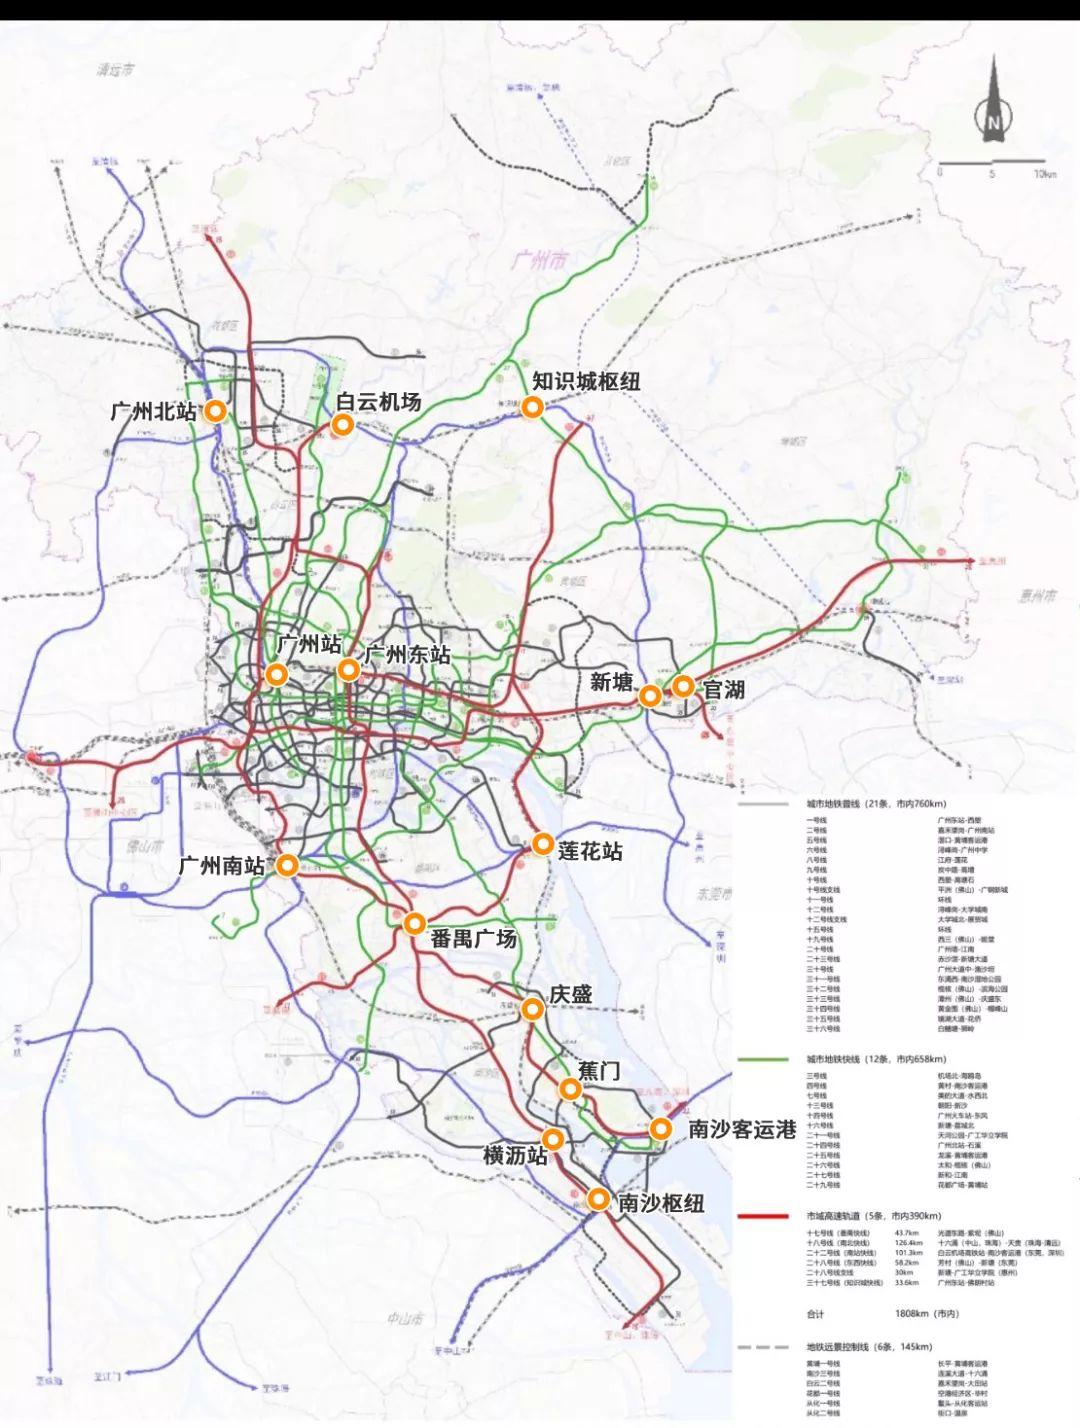 广州2035年地铁规划 1,城市地铁普线(21条,市内760km) 一号线:广州